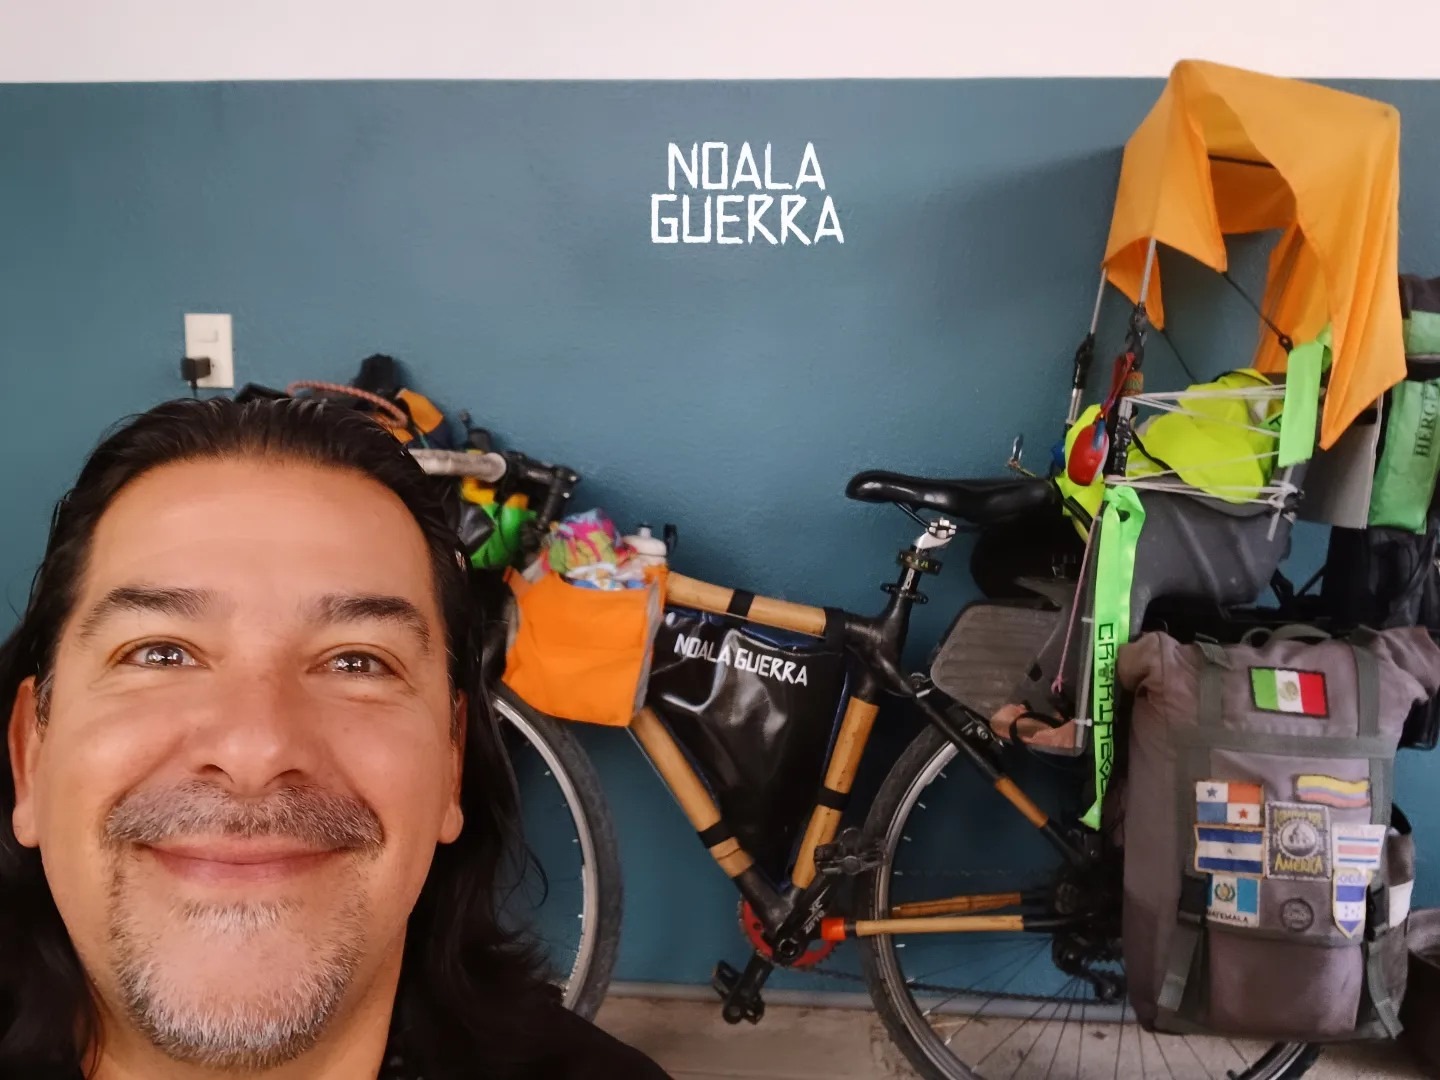  Foro Nacional de la Bicicleta, Mèxico